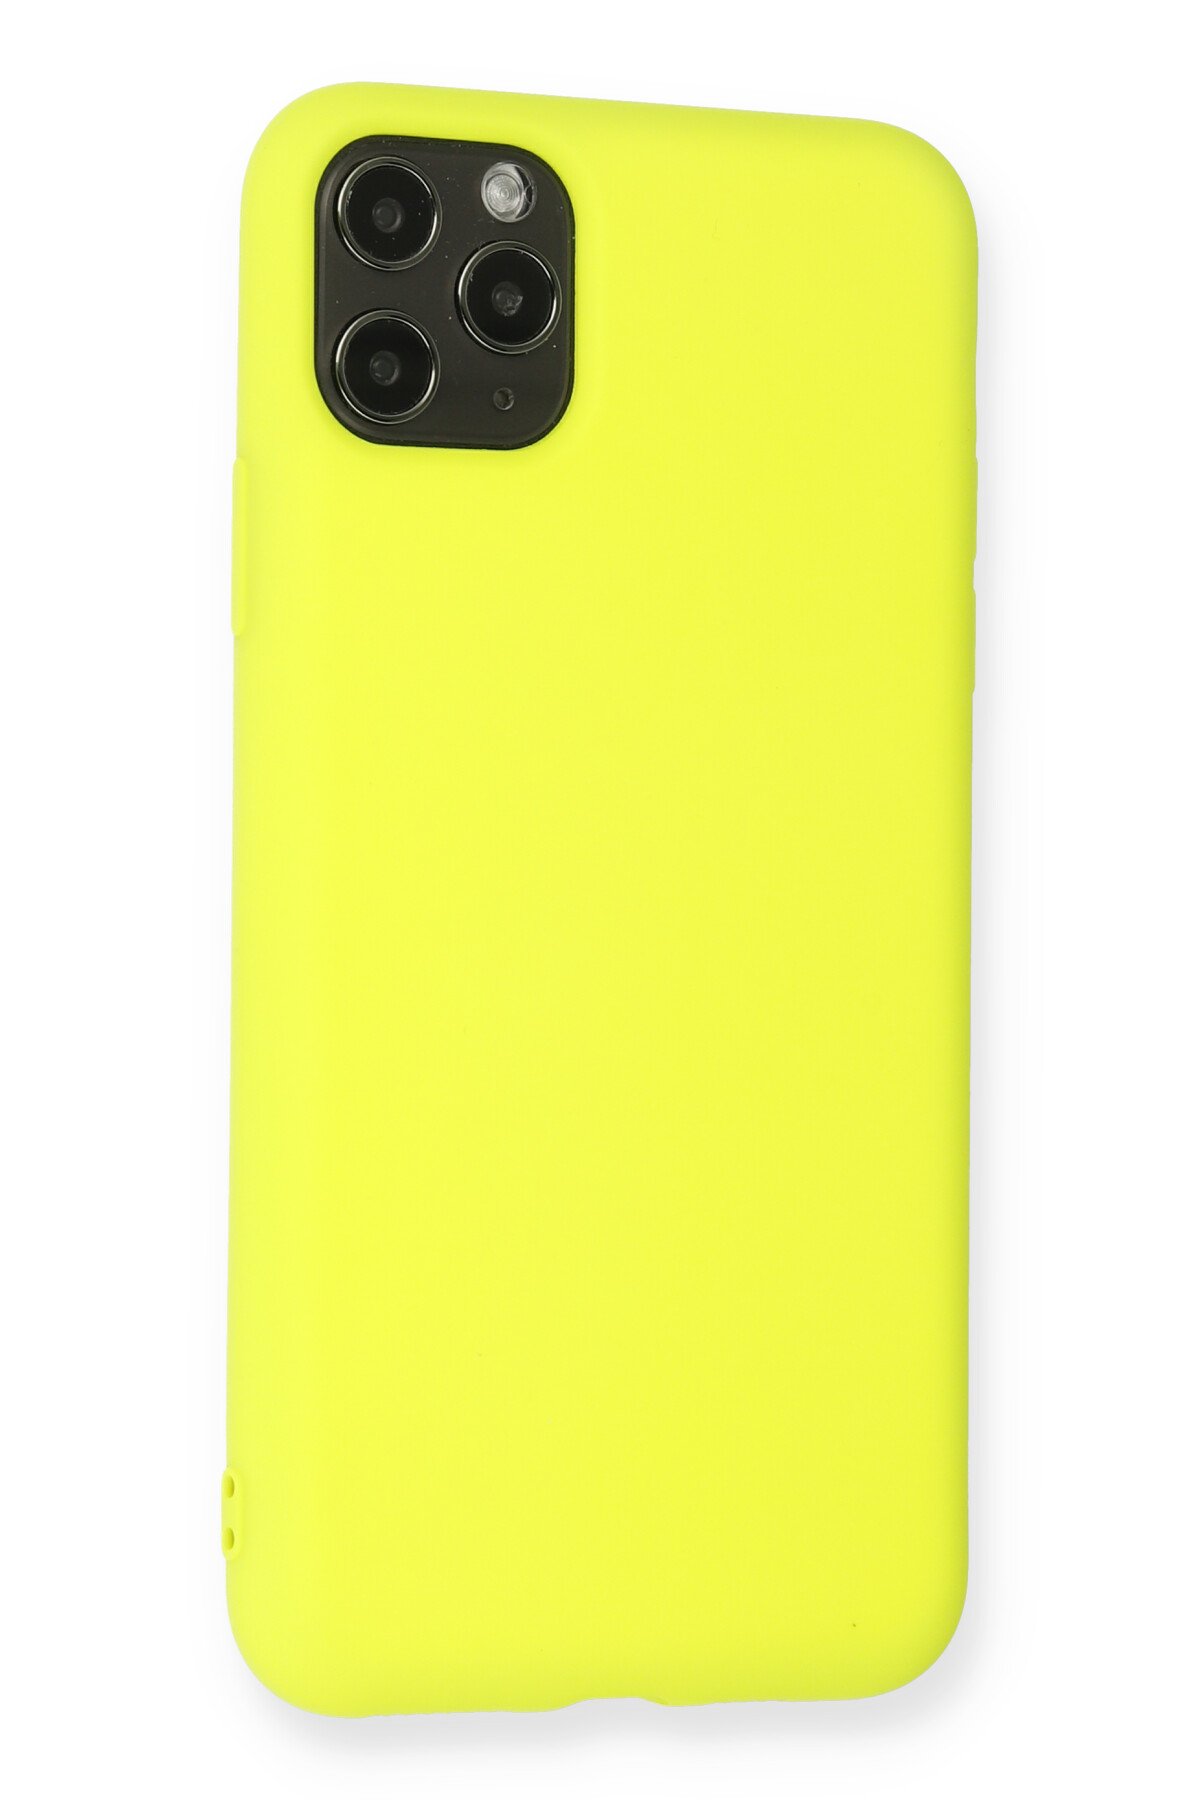 Newface iPhone 11 Pro Max Kılıf Miami Şeffaf Silikon - Koyu Yeşil